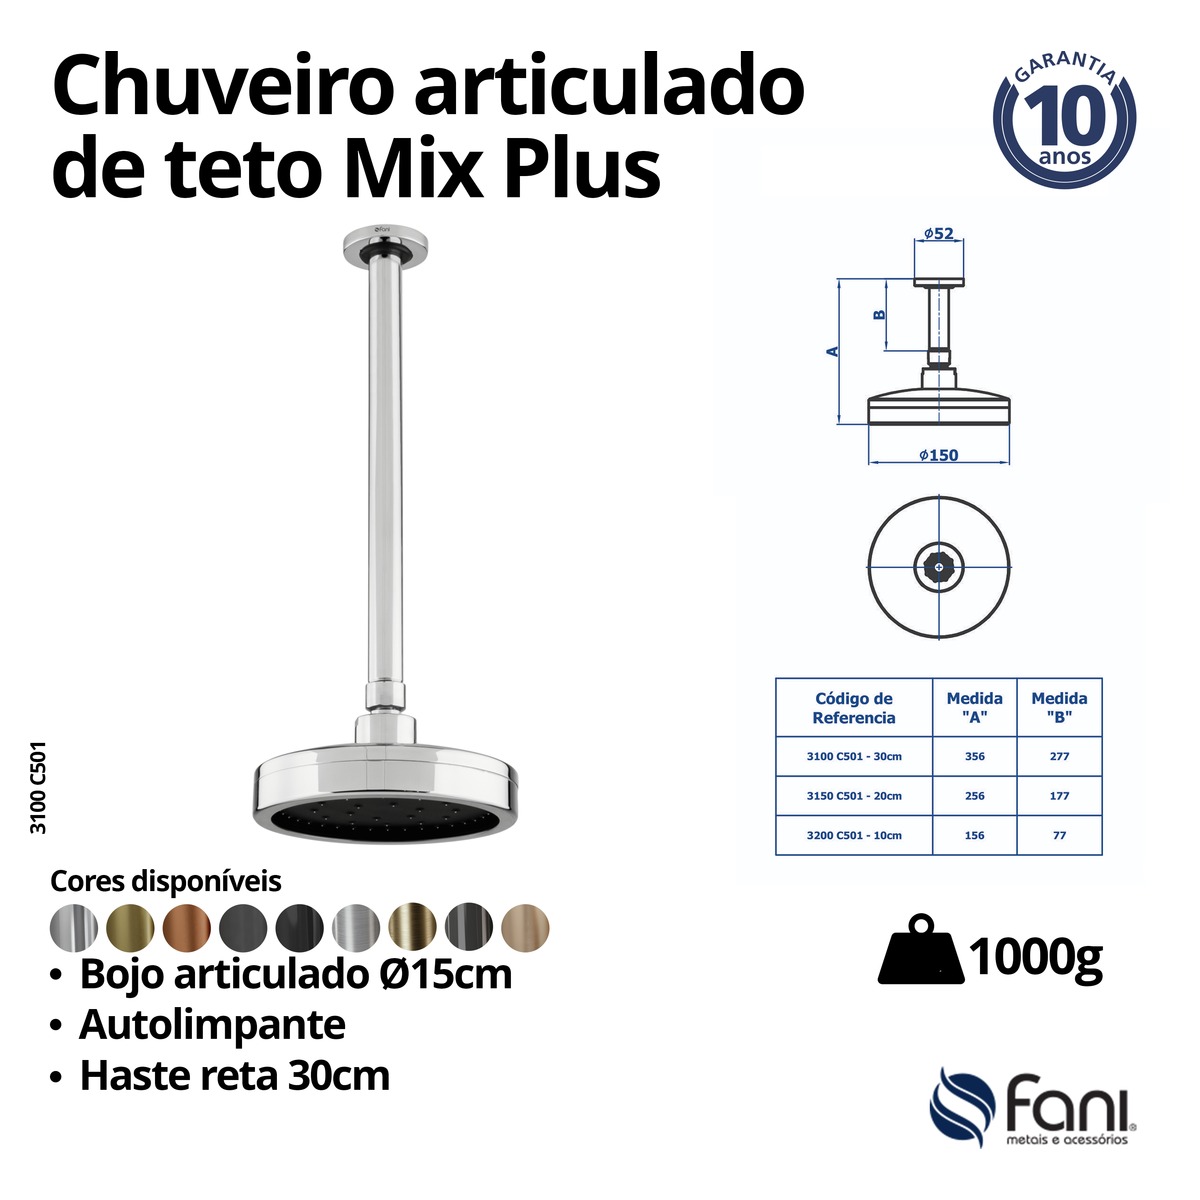 Chuveiro Articulado Teto Metal 30cm Mix Plus 3100OV501 Ouro Velho Fani